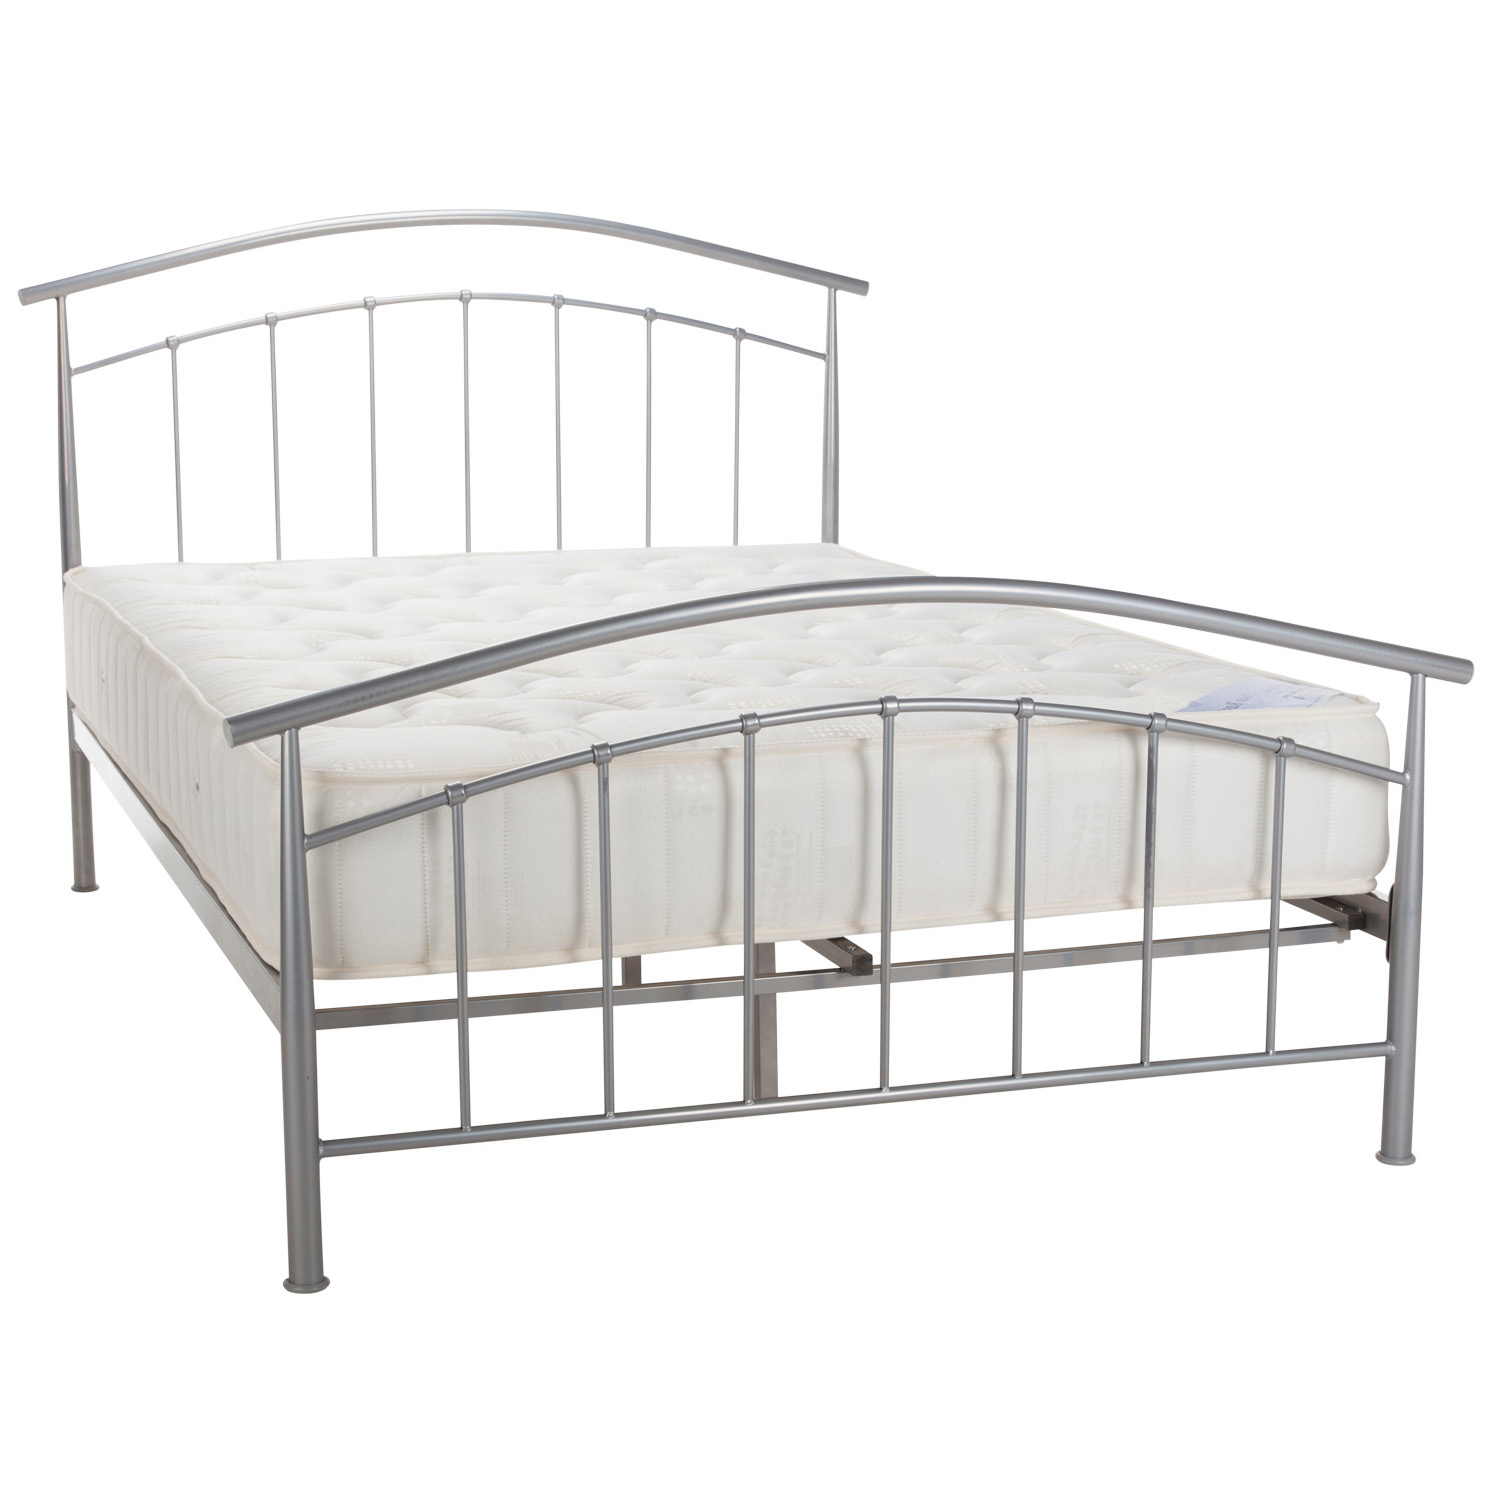 Mercury Pearl Silver metal bed frame